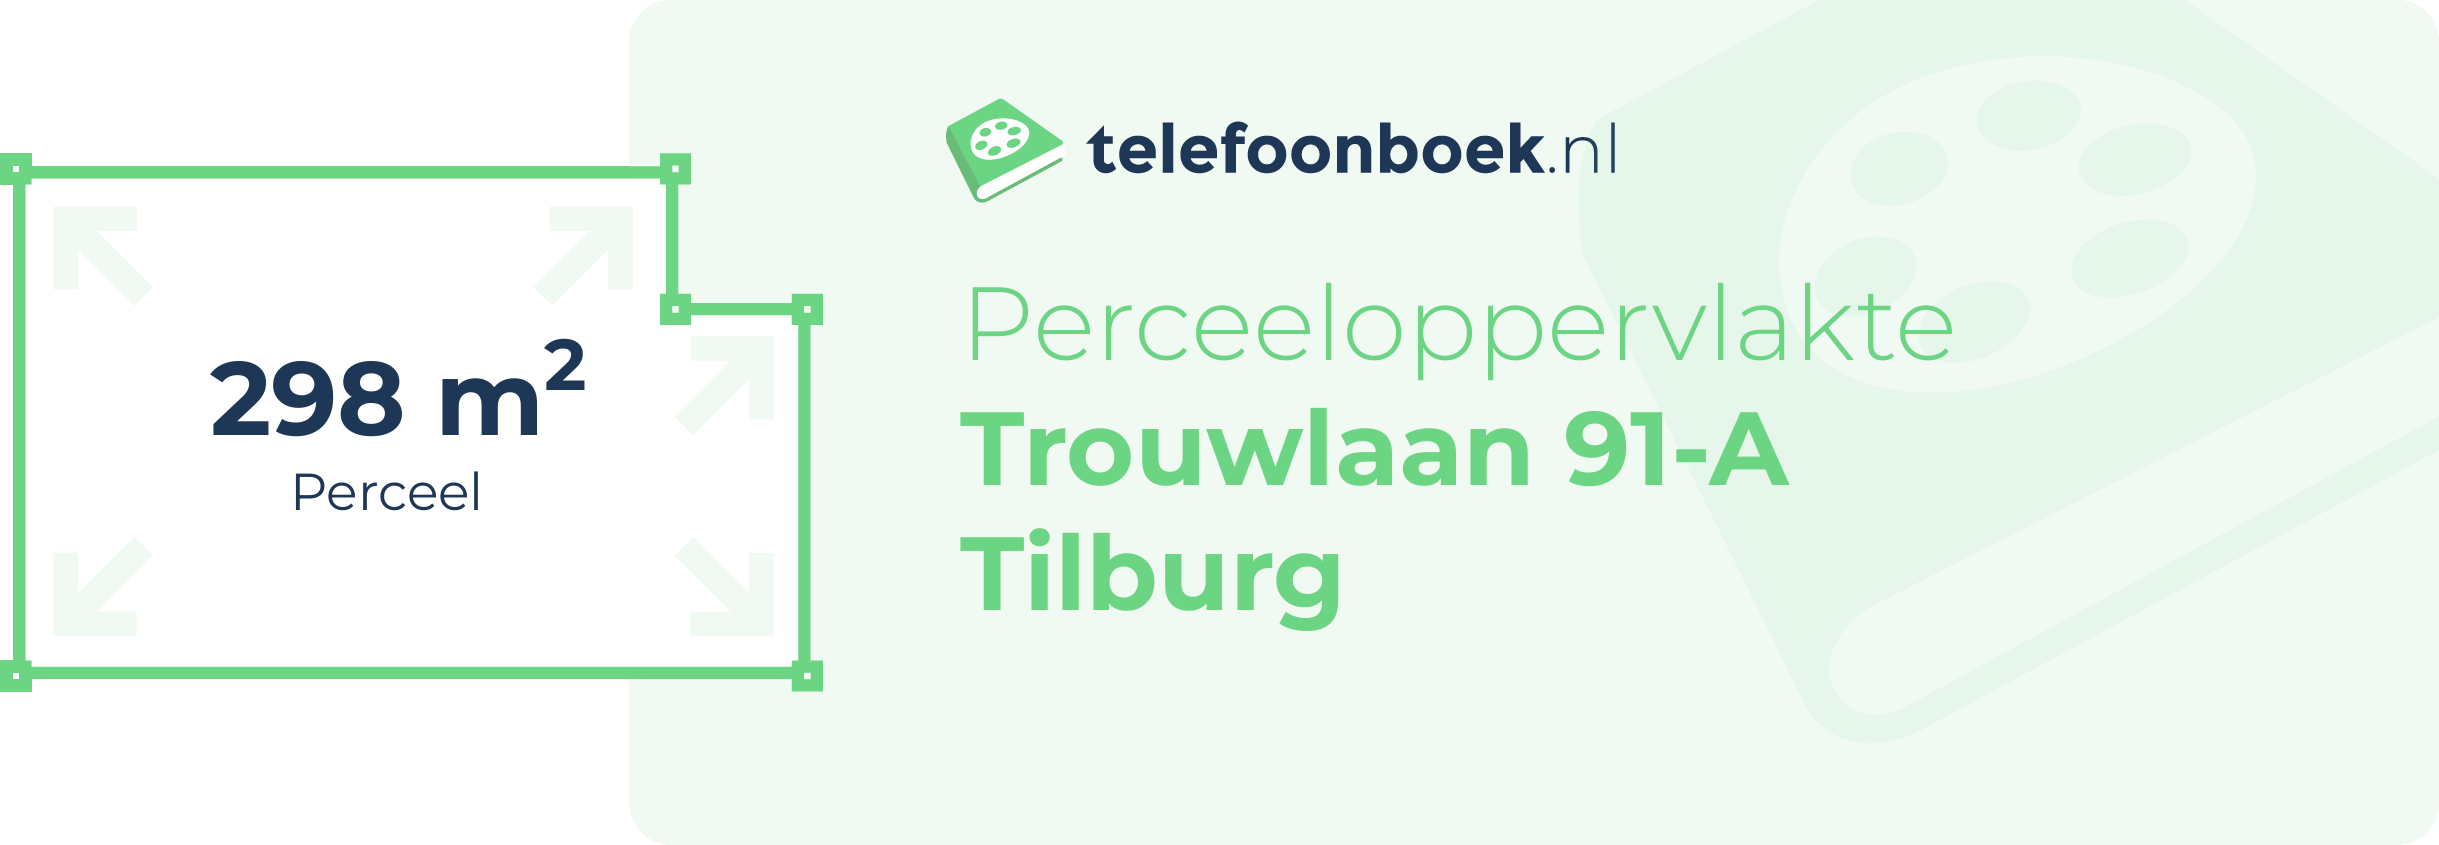 Perceeloppervlakte Trouwlaan 91-A Tilburg